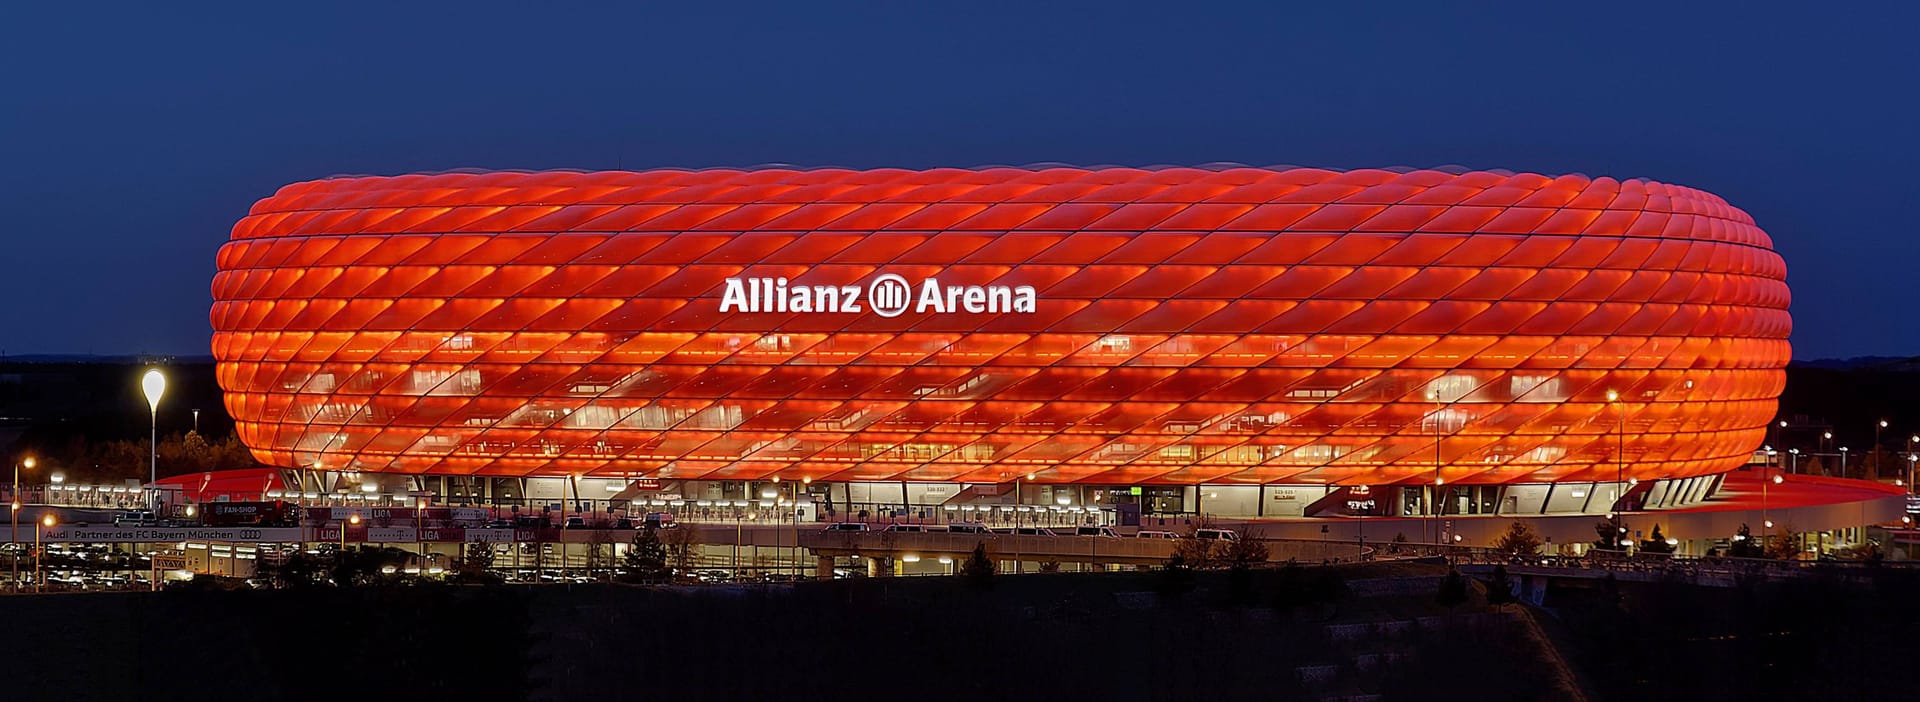 Allianz Arena in München: Durch den FC Bayern München erfreut sich die Allianz Arena Weltruhm. Bei der EM in Deutschland hat sie wie schon bei der multinationalen EM 2021 entsprechend ebenfalls ihren festen Platz. Und wie schon bei der Weltmeisterschaft 2006 wird die Arena das Eröffnungsspiel ausrichten. 66.000 Zuschauer werden die deutsche Nationalmannschaft gegen Schottland spielen sehen und die Allianz Arena zum zweitgrößten Stadion des Turniers machen. Neben der Turnier-Eröffnung werden noch drei weitere Gruppenspiele sowie ein Achtel- und ein Halbfinale in München ausgetragen.